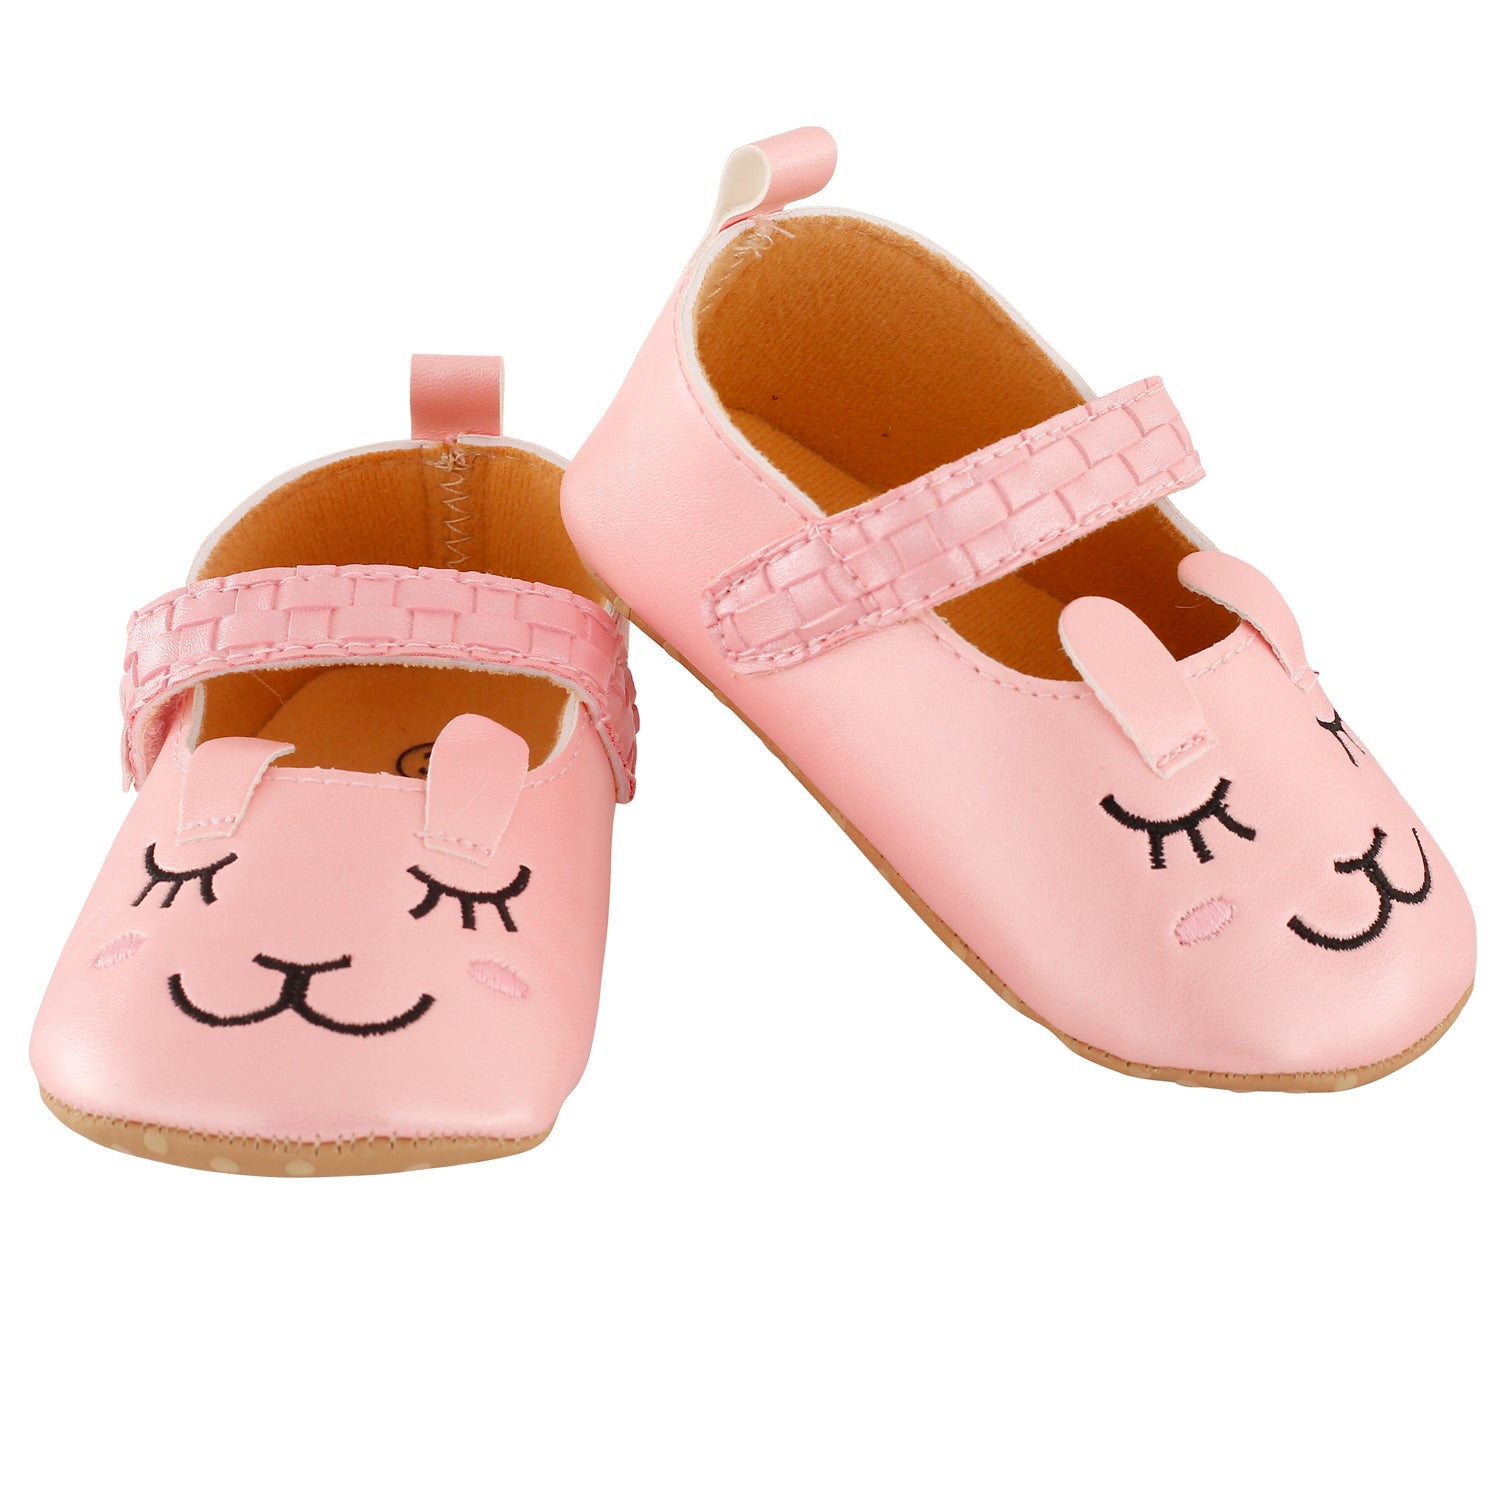 Blushing Kitten Pink Party Booties - Baby Moo